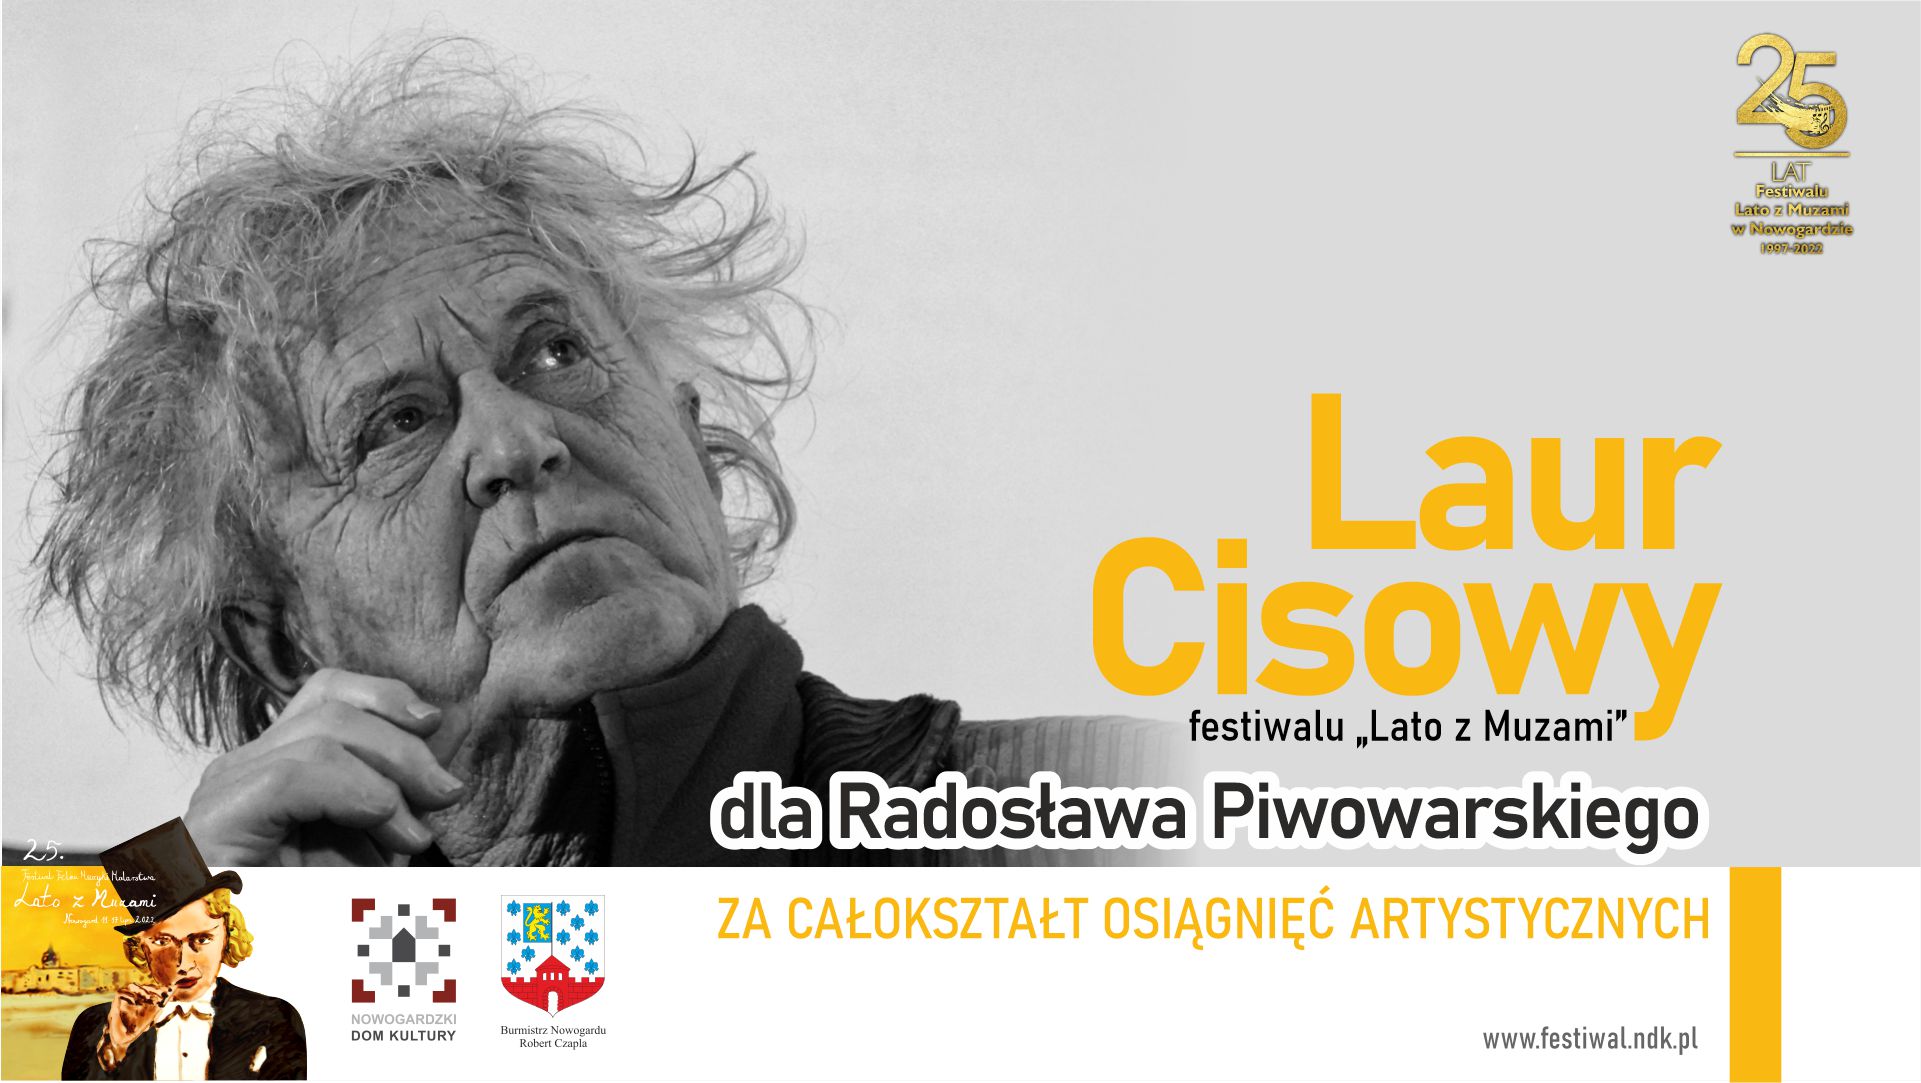 LzM | Laur Cisowy festiwalu „Lato z Muzami” dla Radosława Piwowarskiego